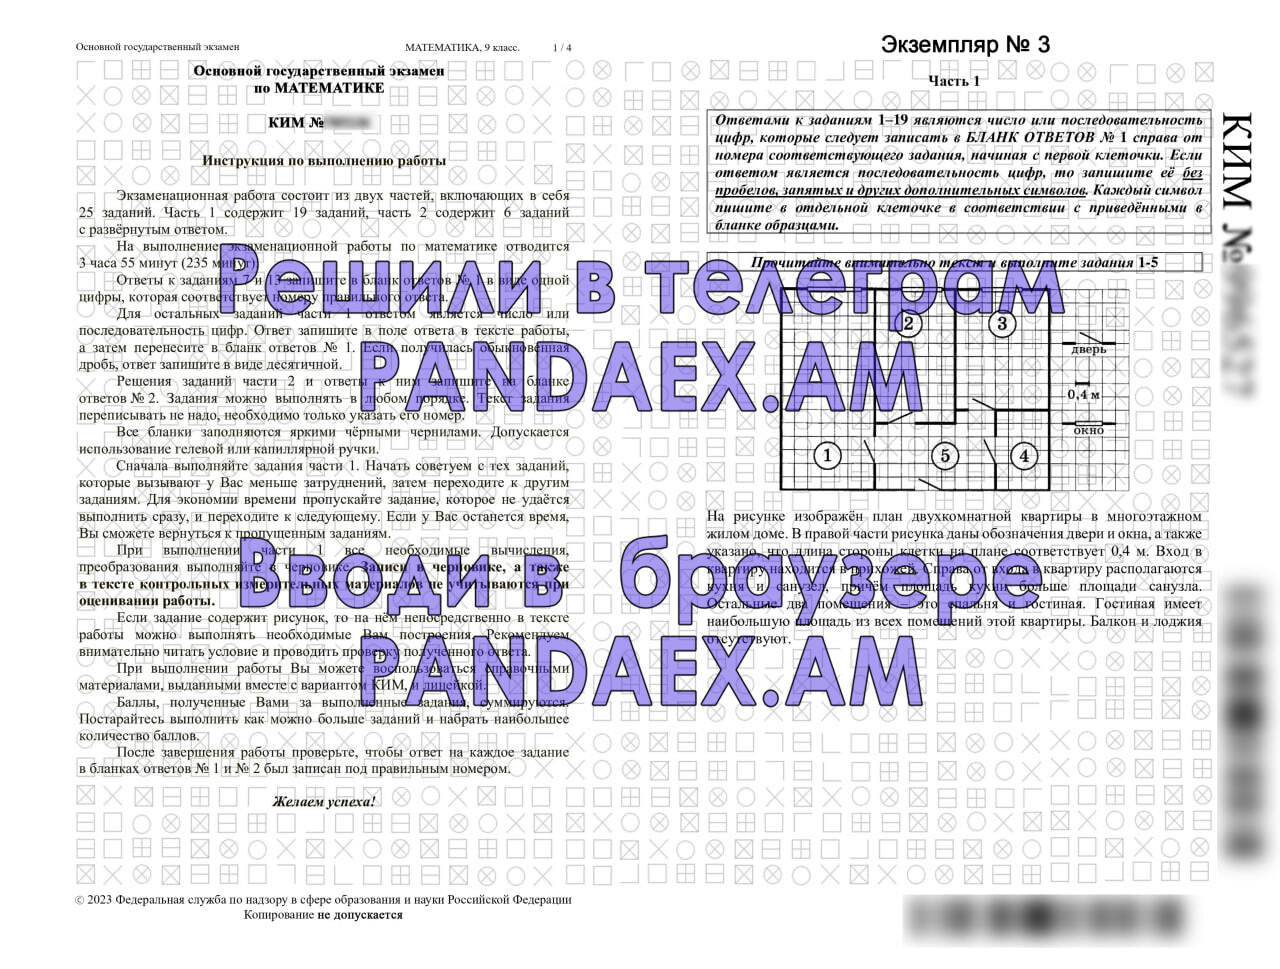 Огэ по русскому языку ответы телеграмм фото 63